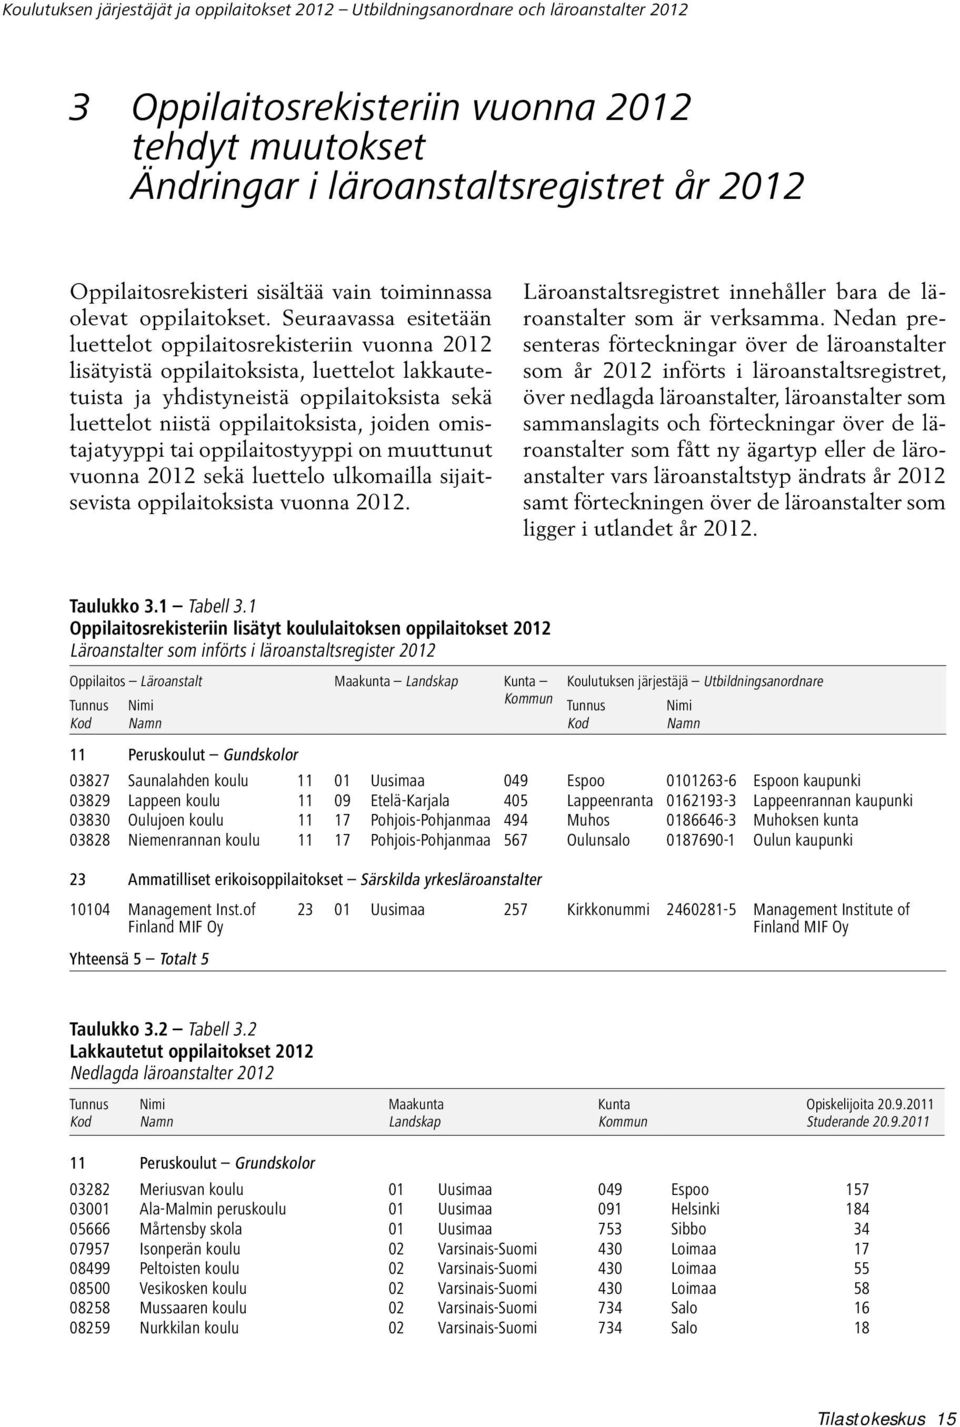 Seuraavassa esitetään luet telot oppilaitosrekisteriin vuonna 2012 lisätyistä oppilaitoksista, luettelot lakkautetuista ja yhdistyneistä oppilaitoksista sekä luettelot niistä oppilaitoksista, joiden